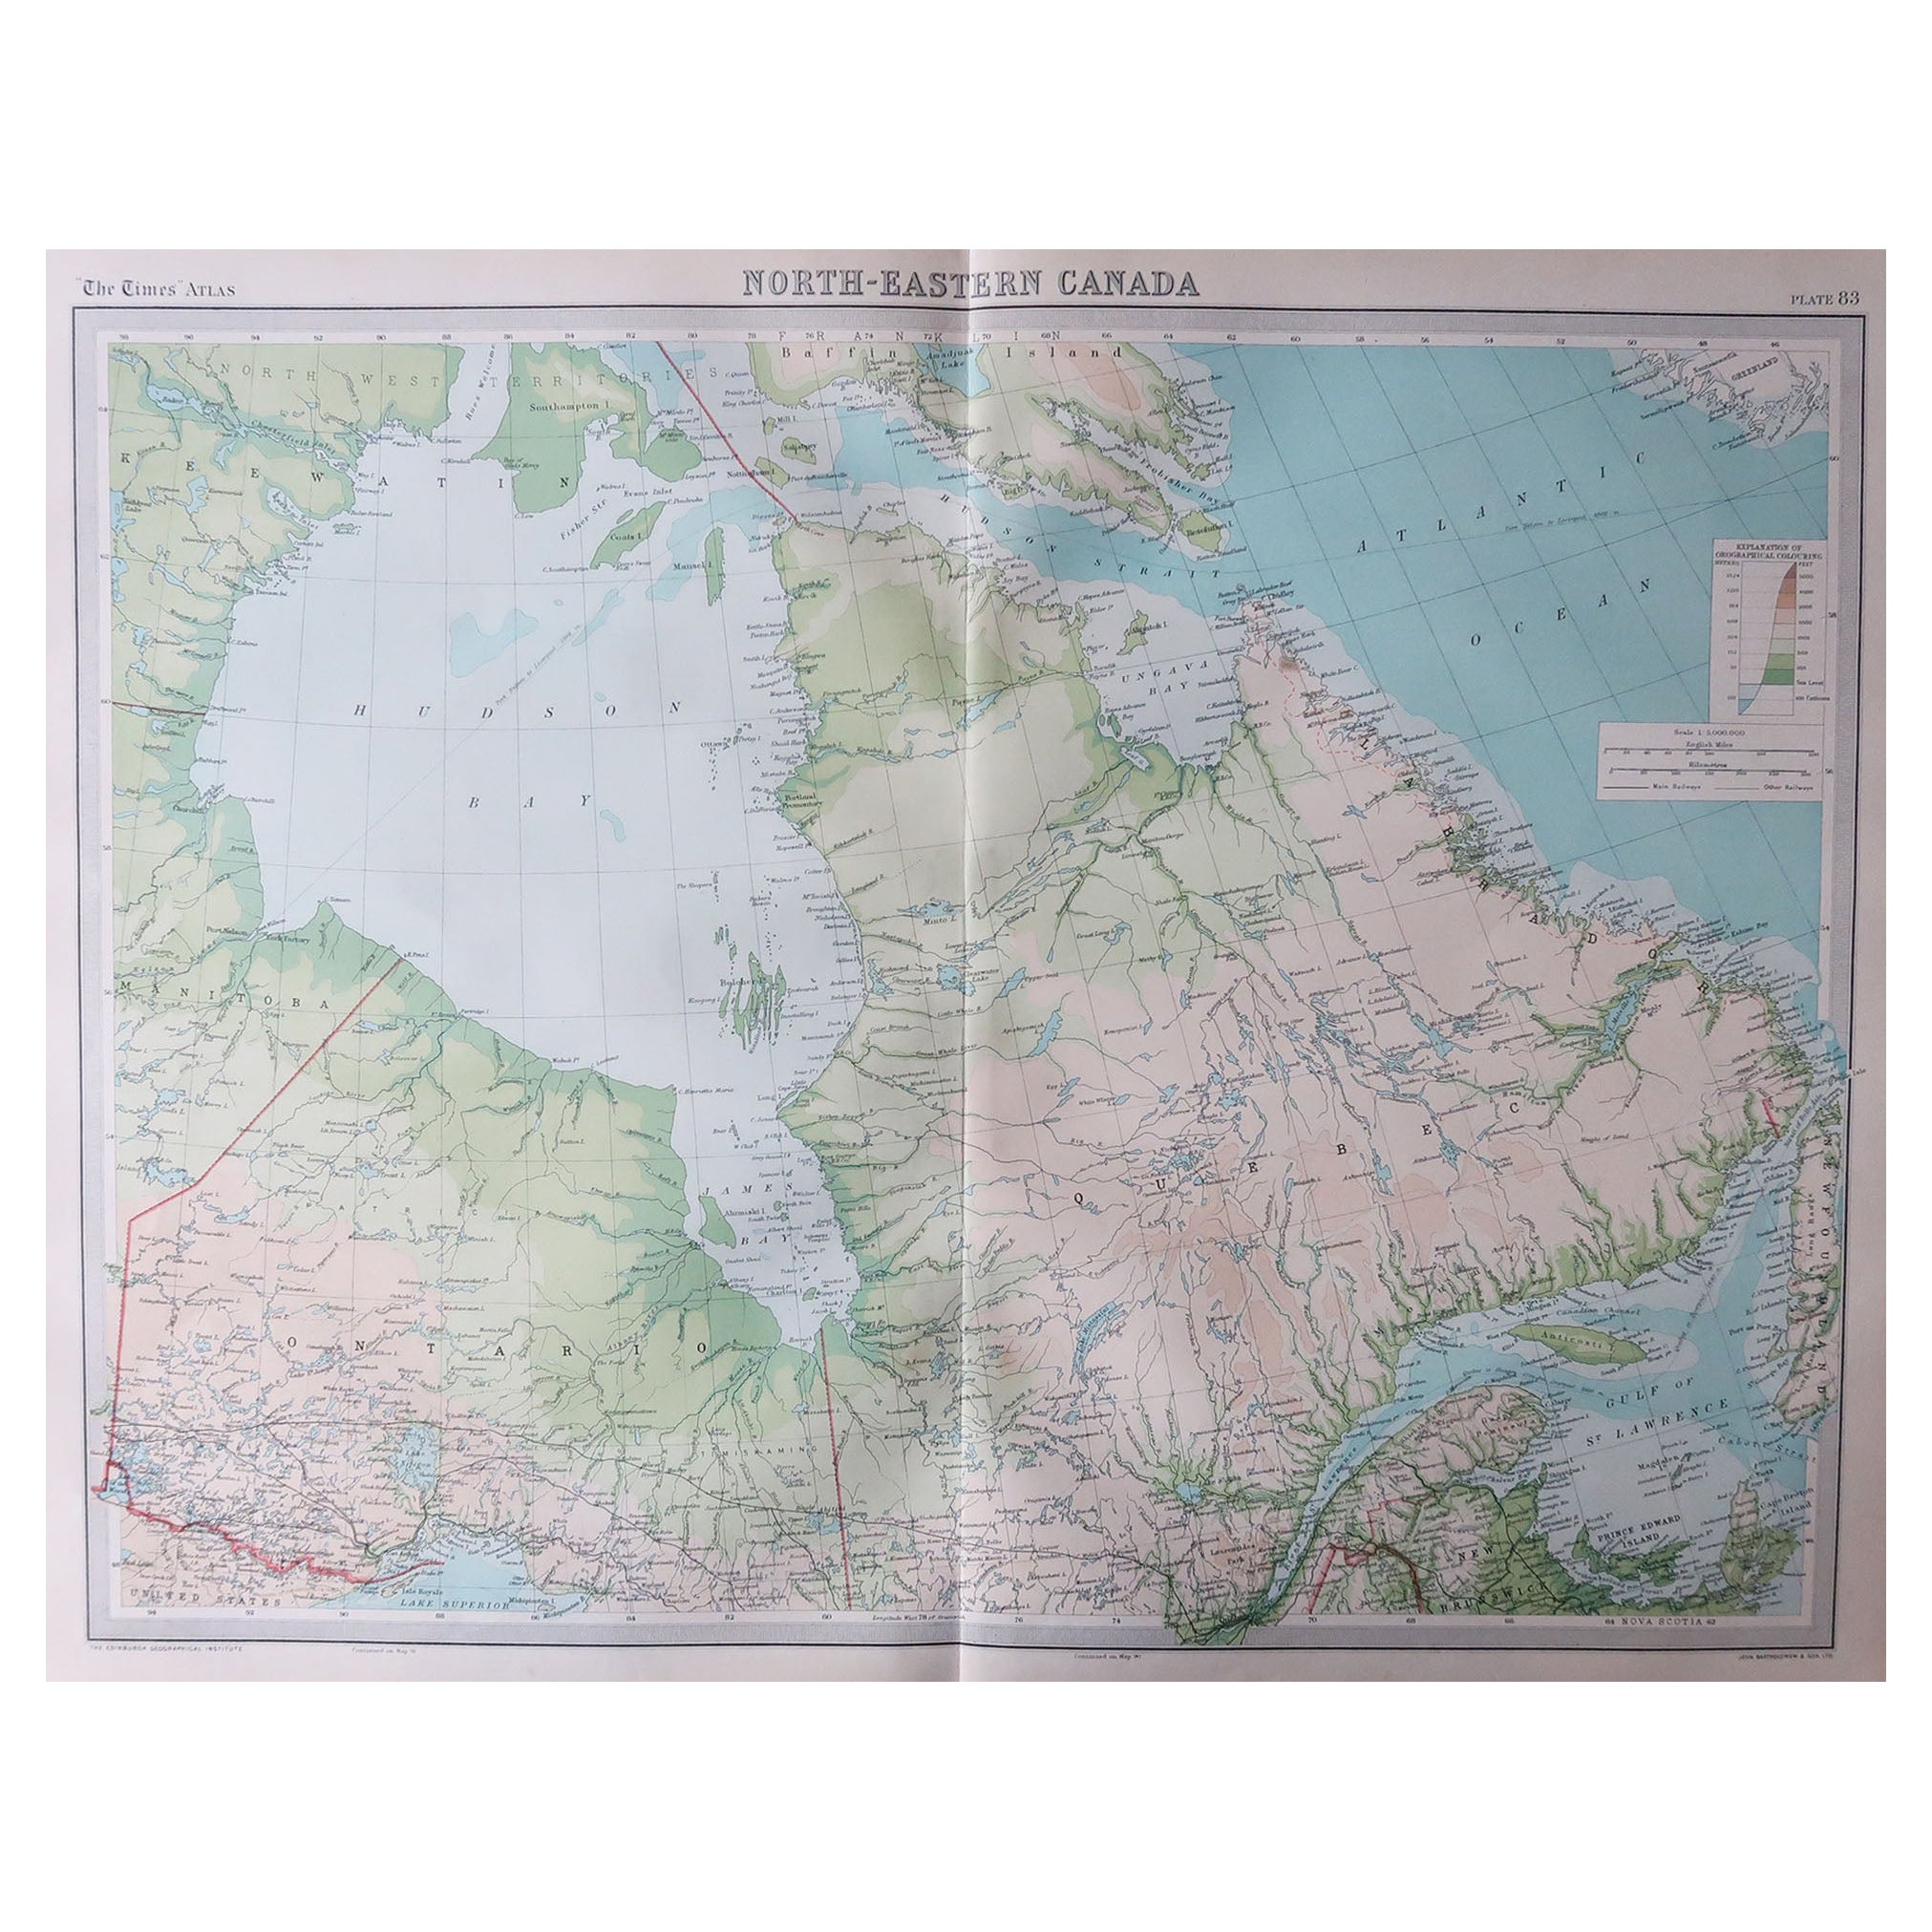 Große Original-Vintage-Karte von Quebec & Ontario, Kanada, um 1920